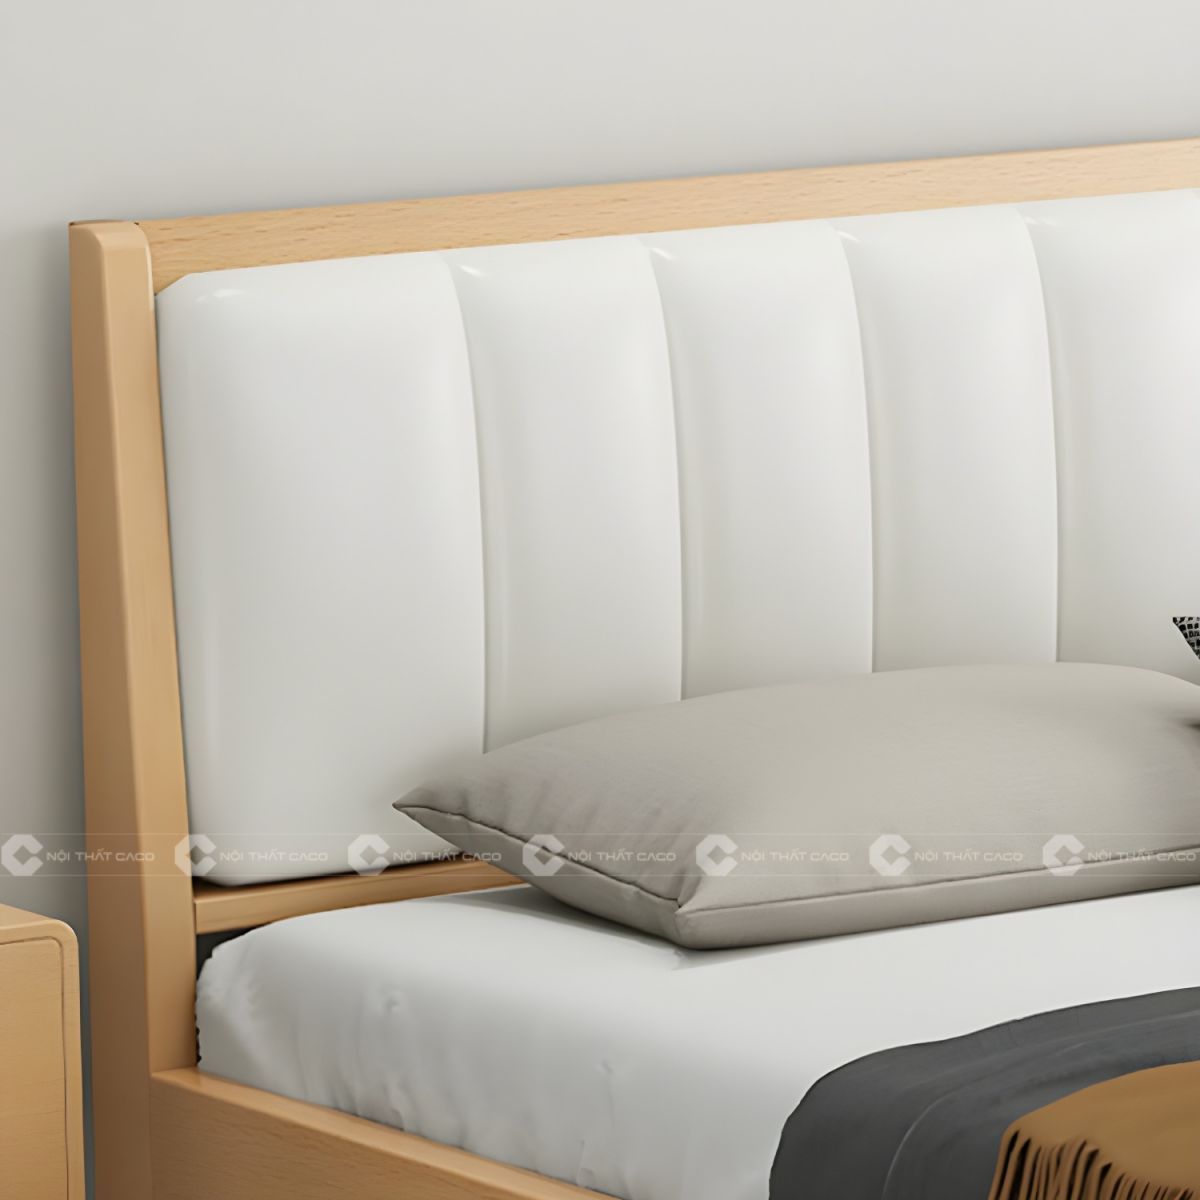 Giường ngủ gỗ tự nhiên với thiết kế đầu giường bọc nệm sang trọng